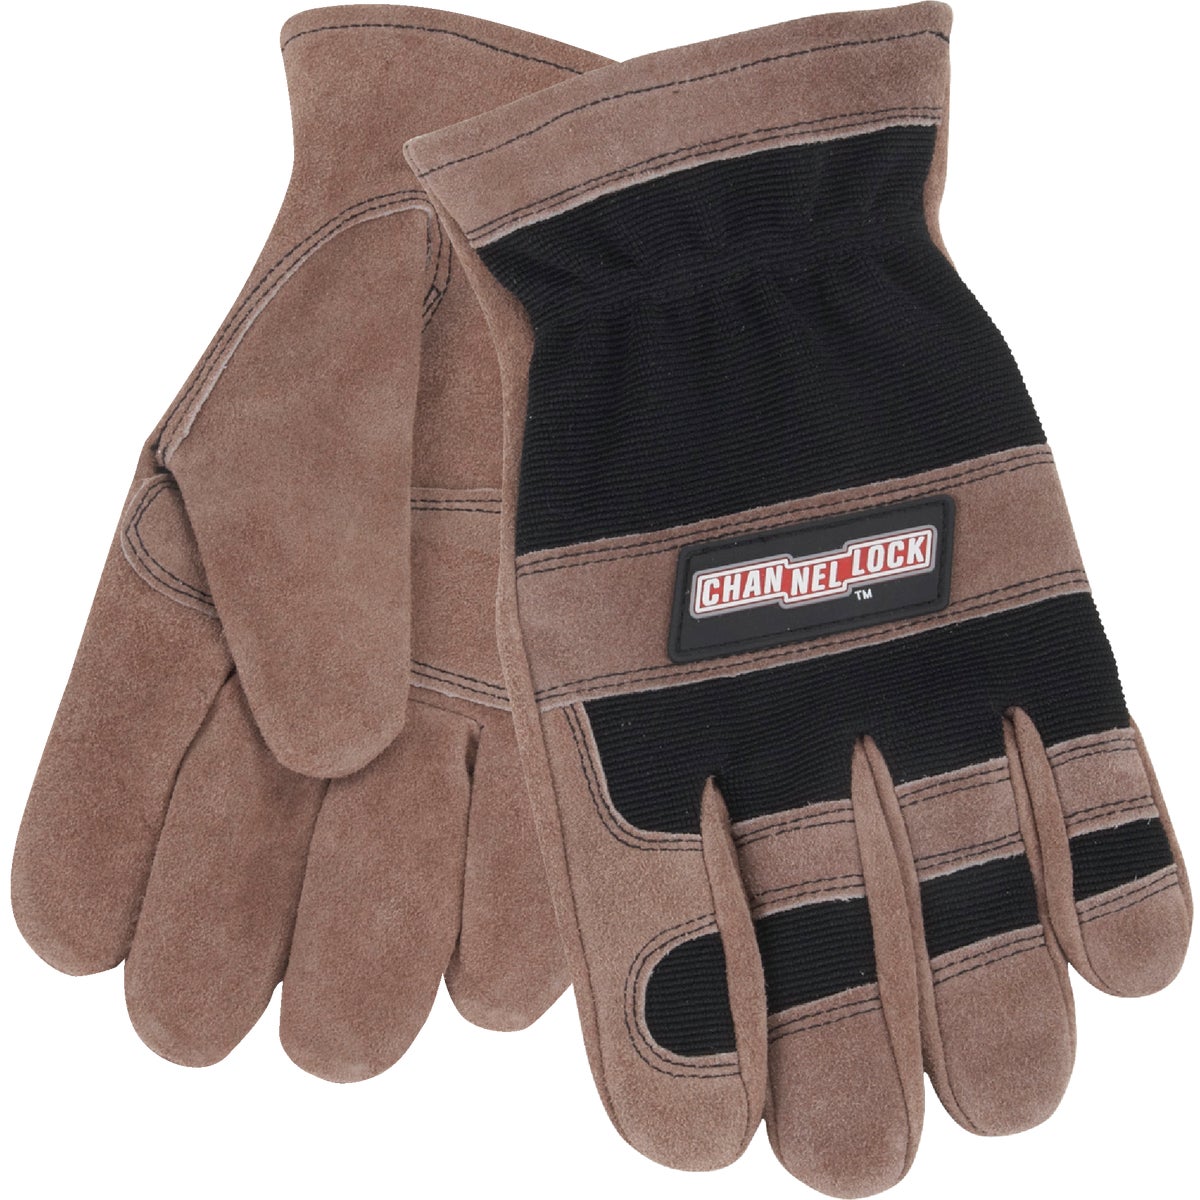 Channellock Men's 2XL Leather Work Glove